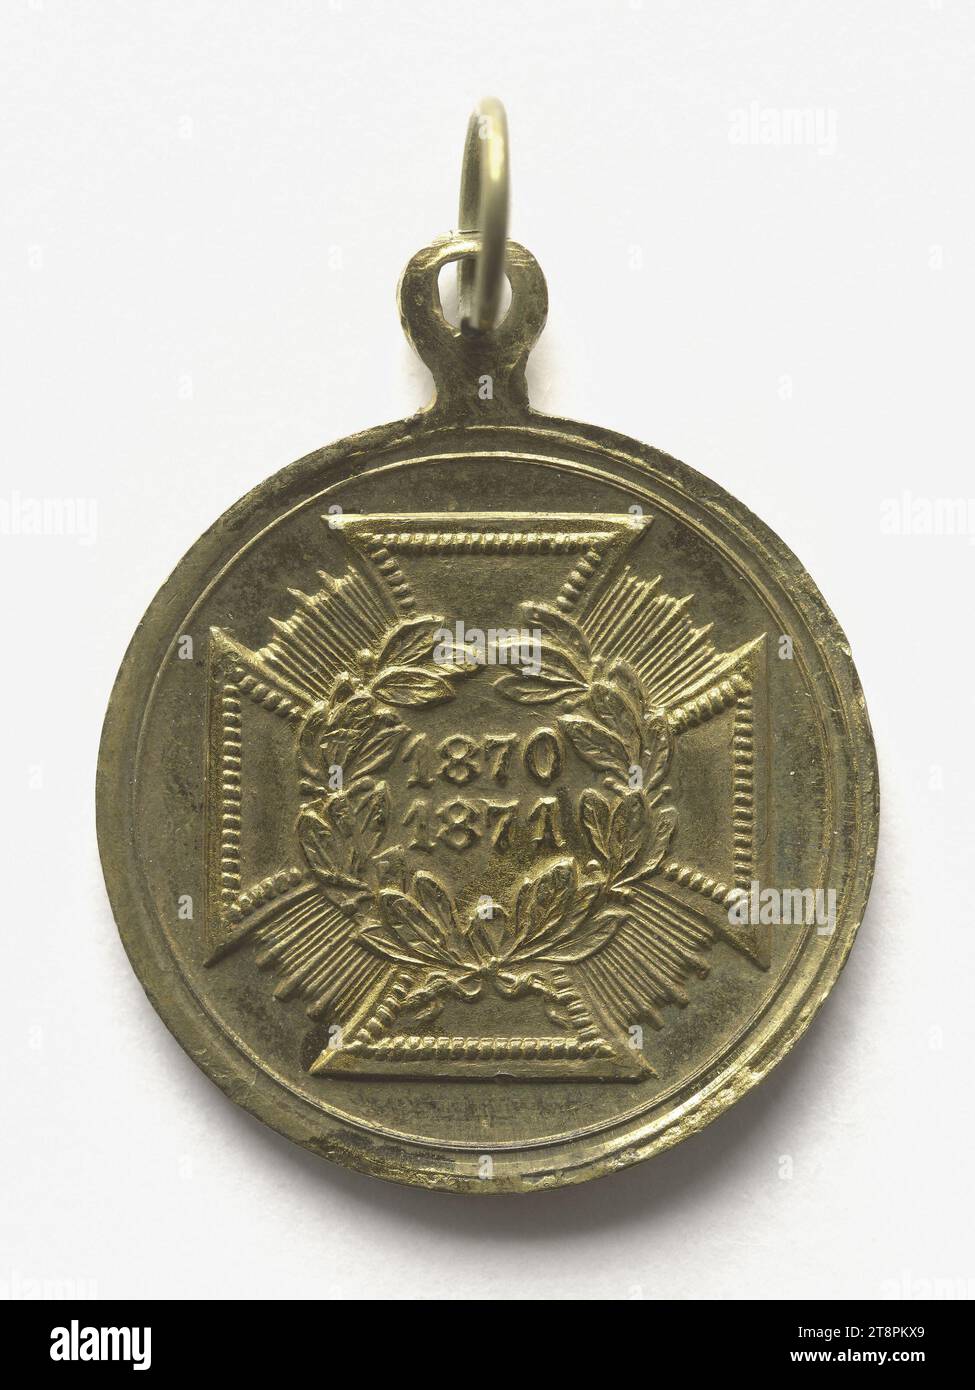 Deutsche Medaille: "Die siegreiche Armee", 1870-1871, Array, Numismatische Medaille, Medaille, Kupfer, vergoldet = Vergoldung, Abmessungen - Werk: Durchmesser: 1,9 cm, Gewicht (Typenabmessung): 2,81 g Stockfoto